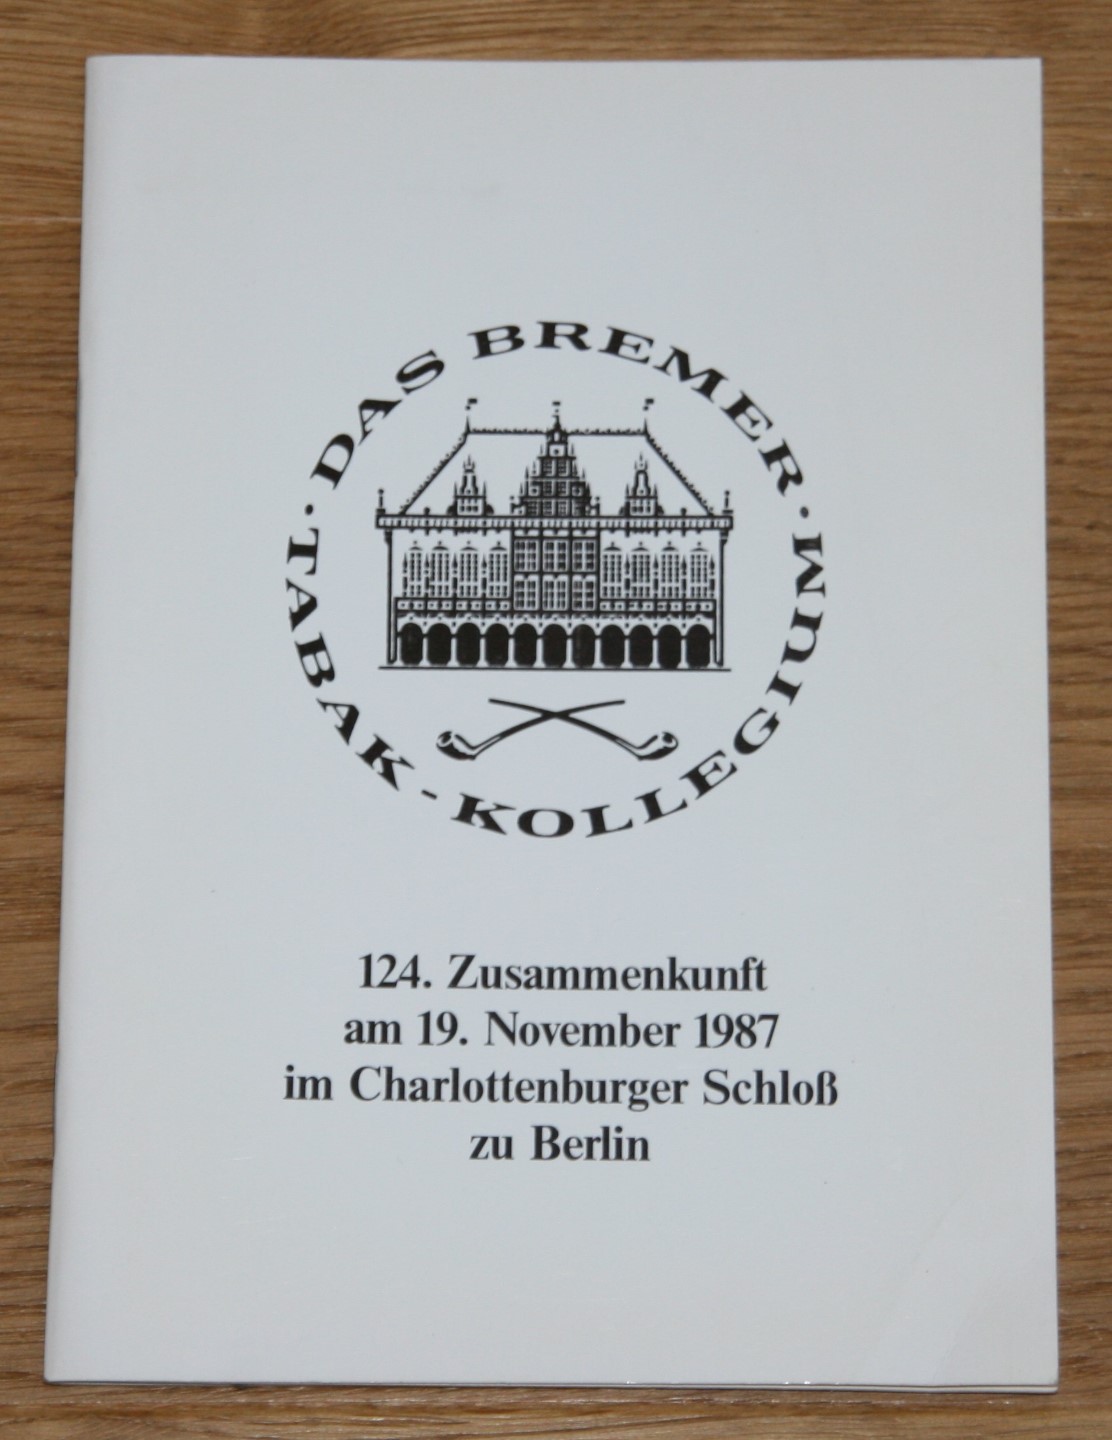 Das Bremer Tabak-Kollegium. 124. Zusammenkunft am 19. November 1987 im Charlottenburger Schloß zu Berlin.